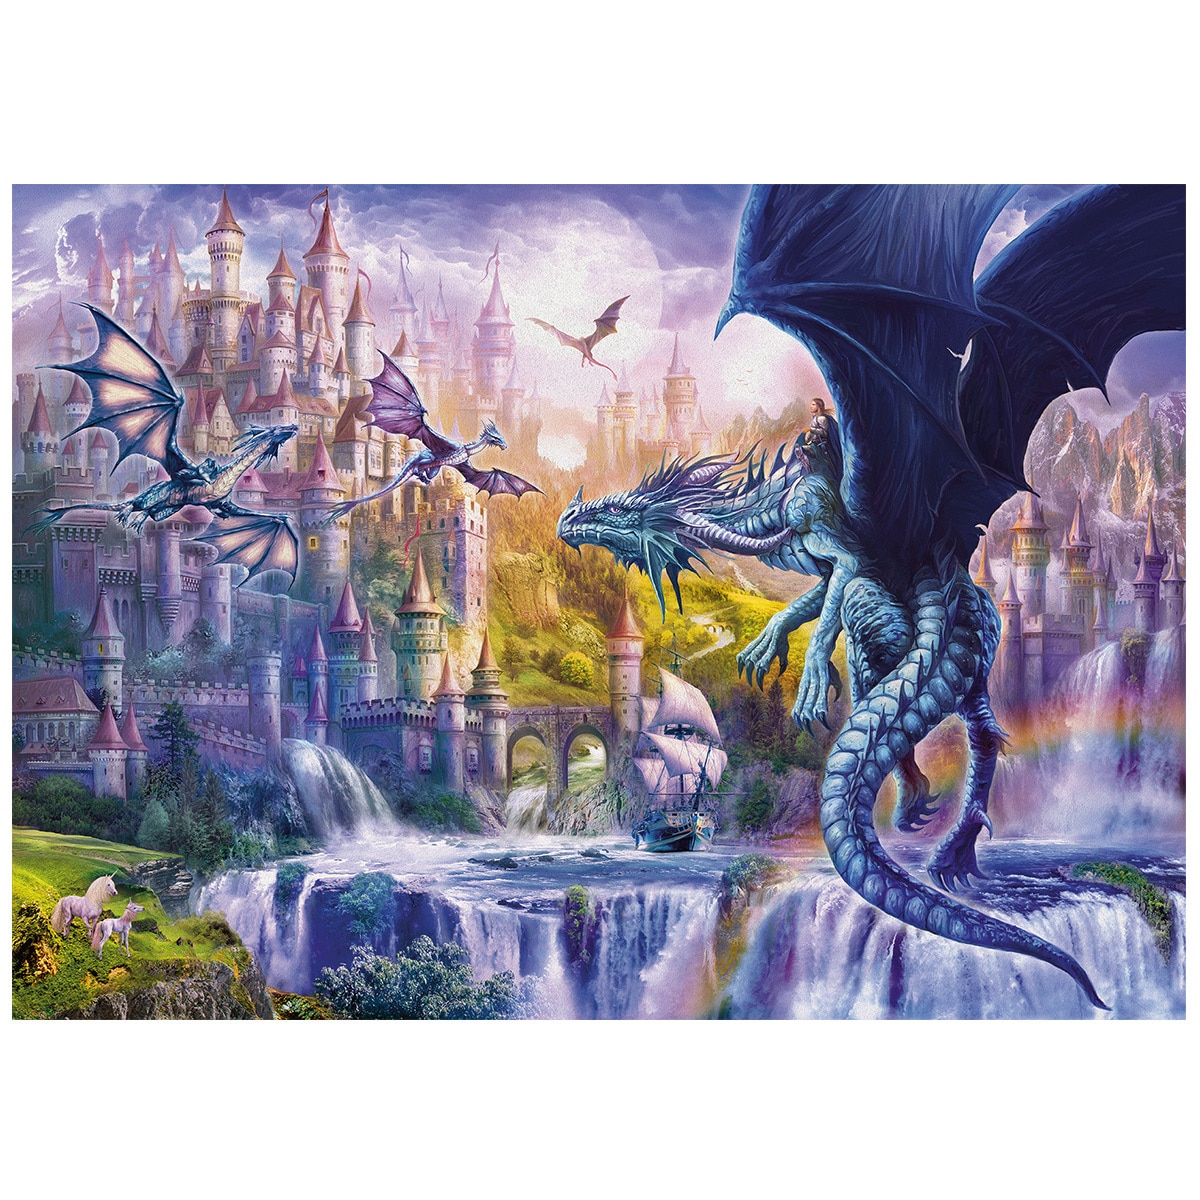 Rburg - Dragon Castle Puzzle 1000 piece